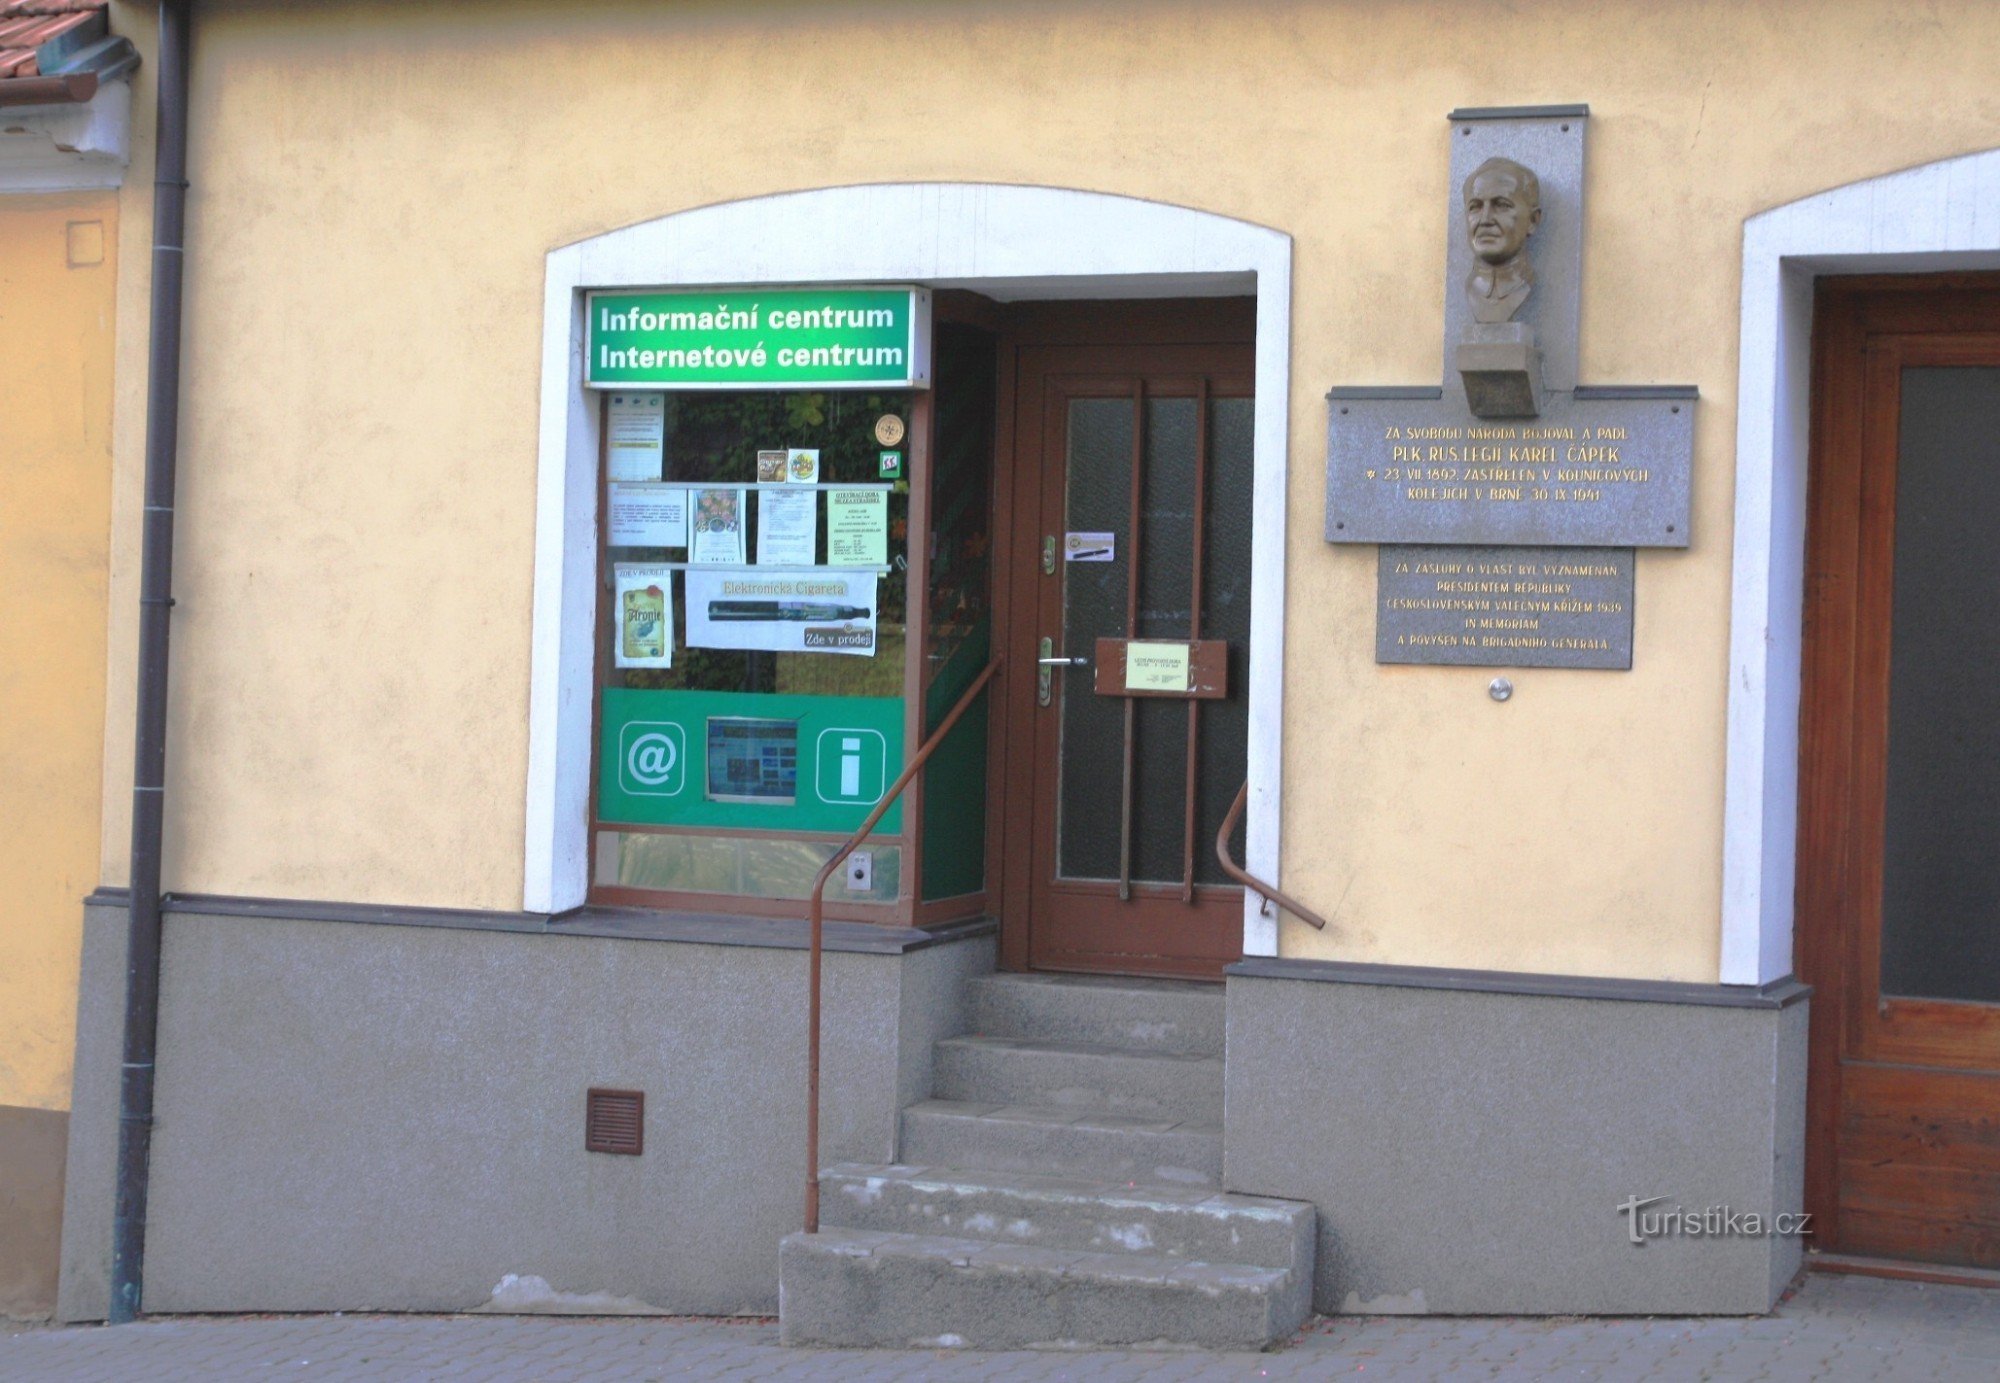 Olešnice - information center